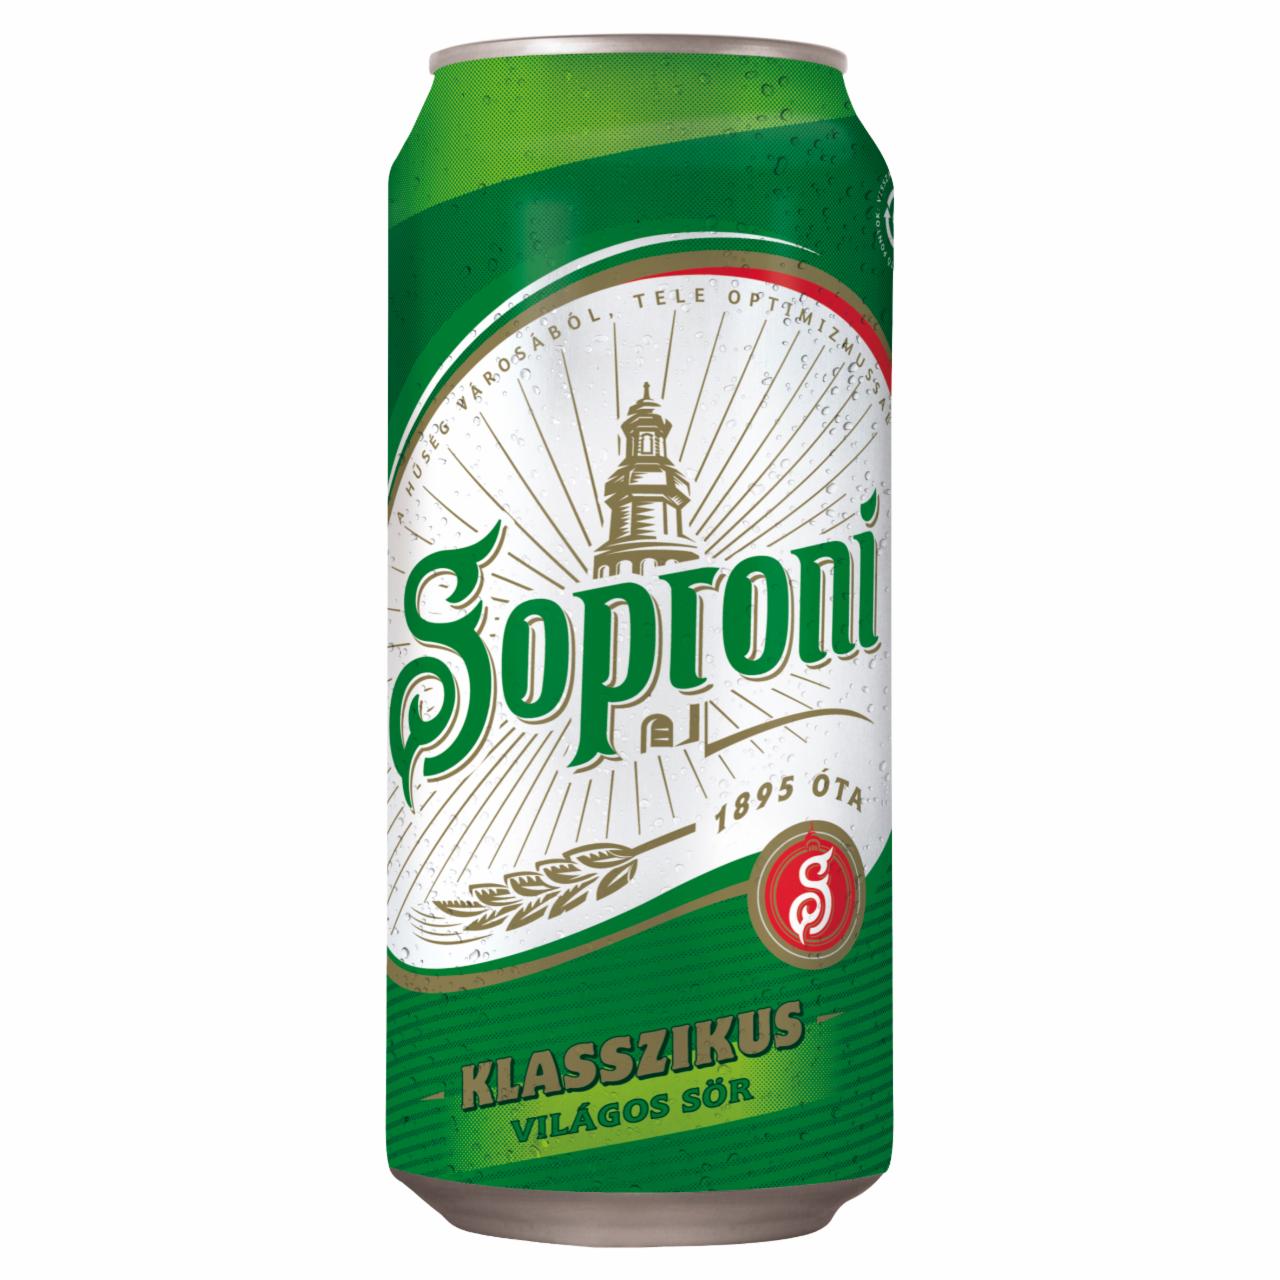 Képek - Soproni Klasszikus világos sör 4,5% 0,4 l